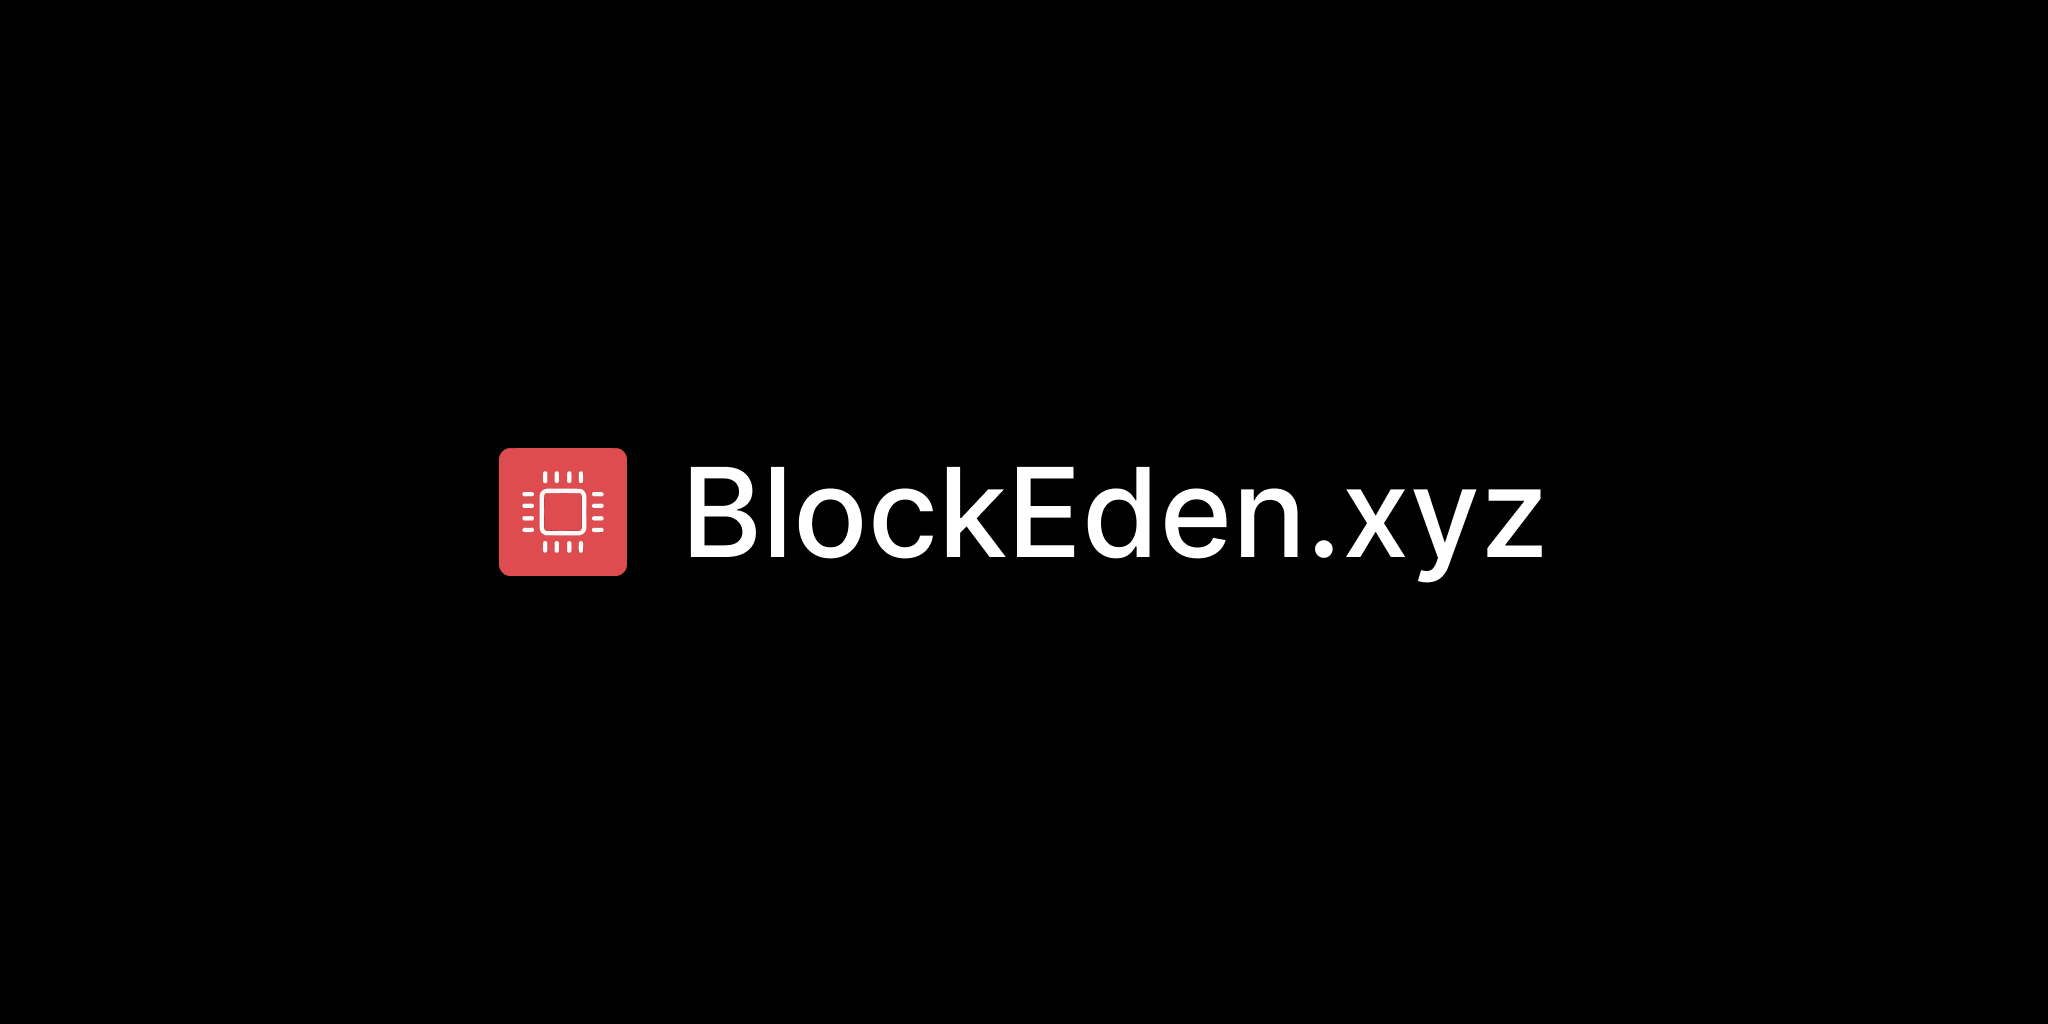 BlockEden.xyz